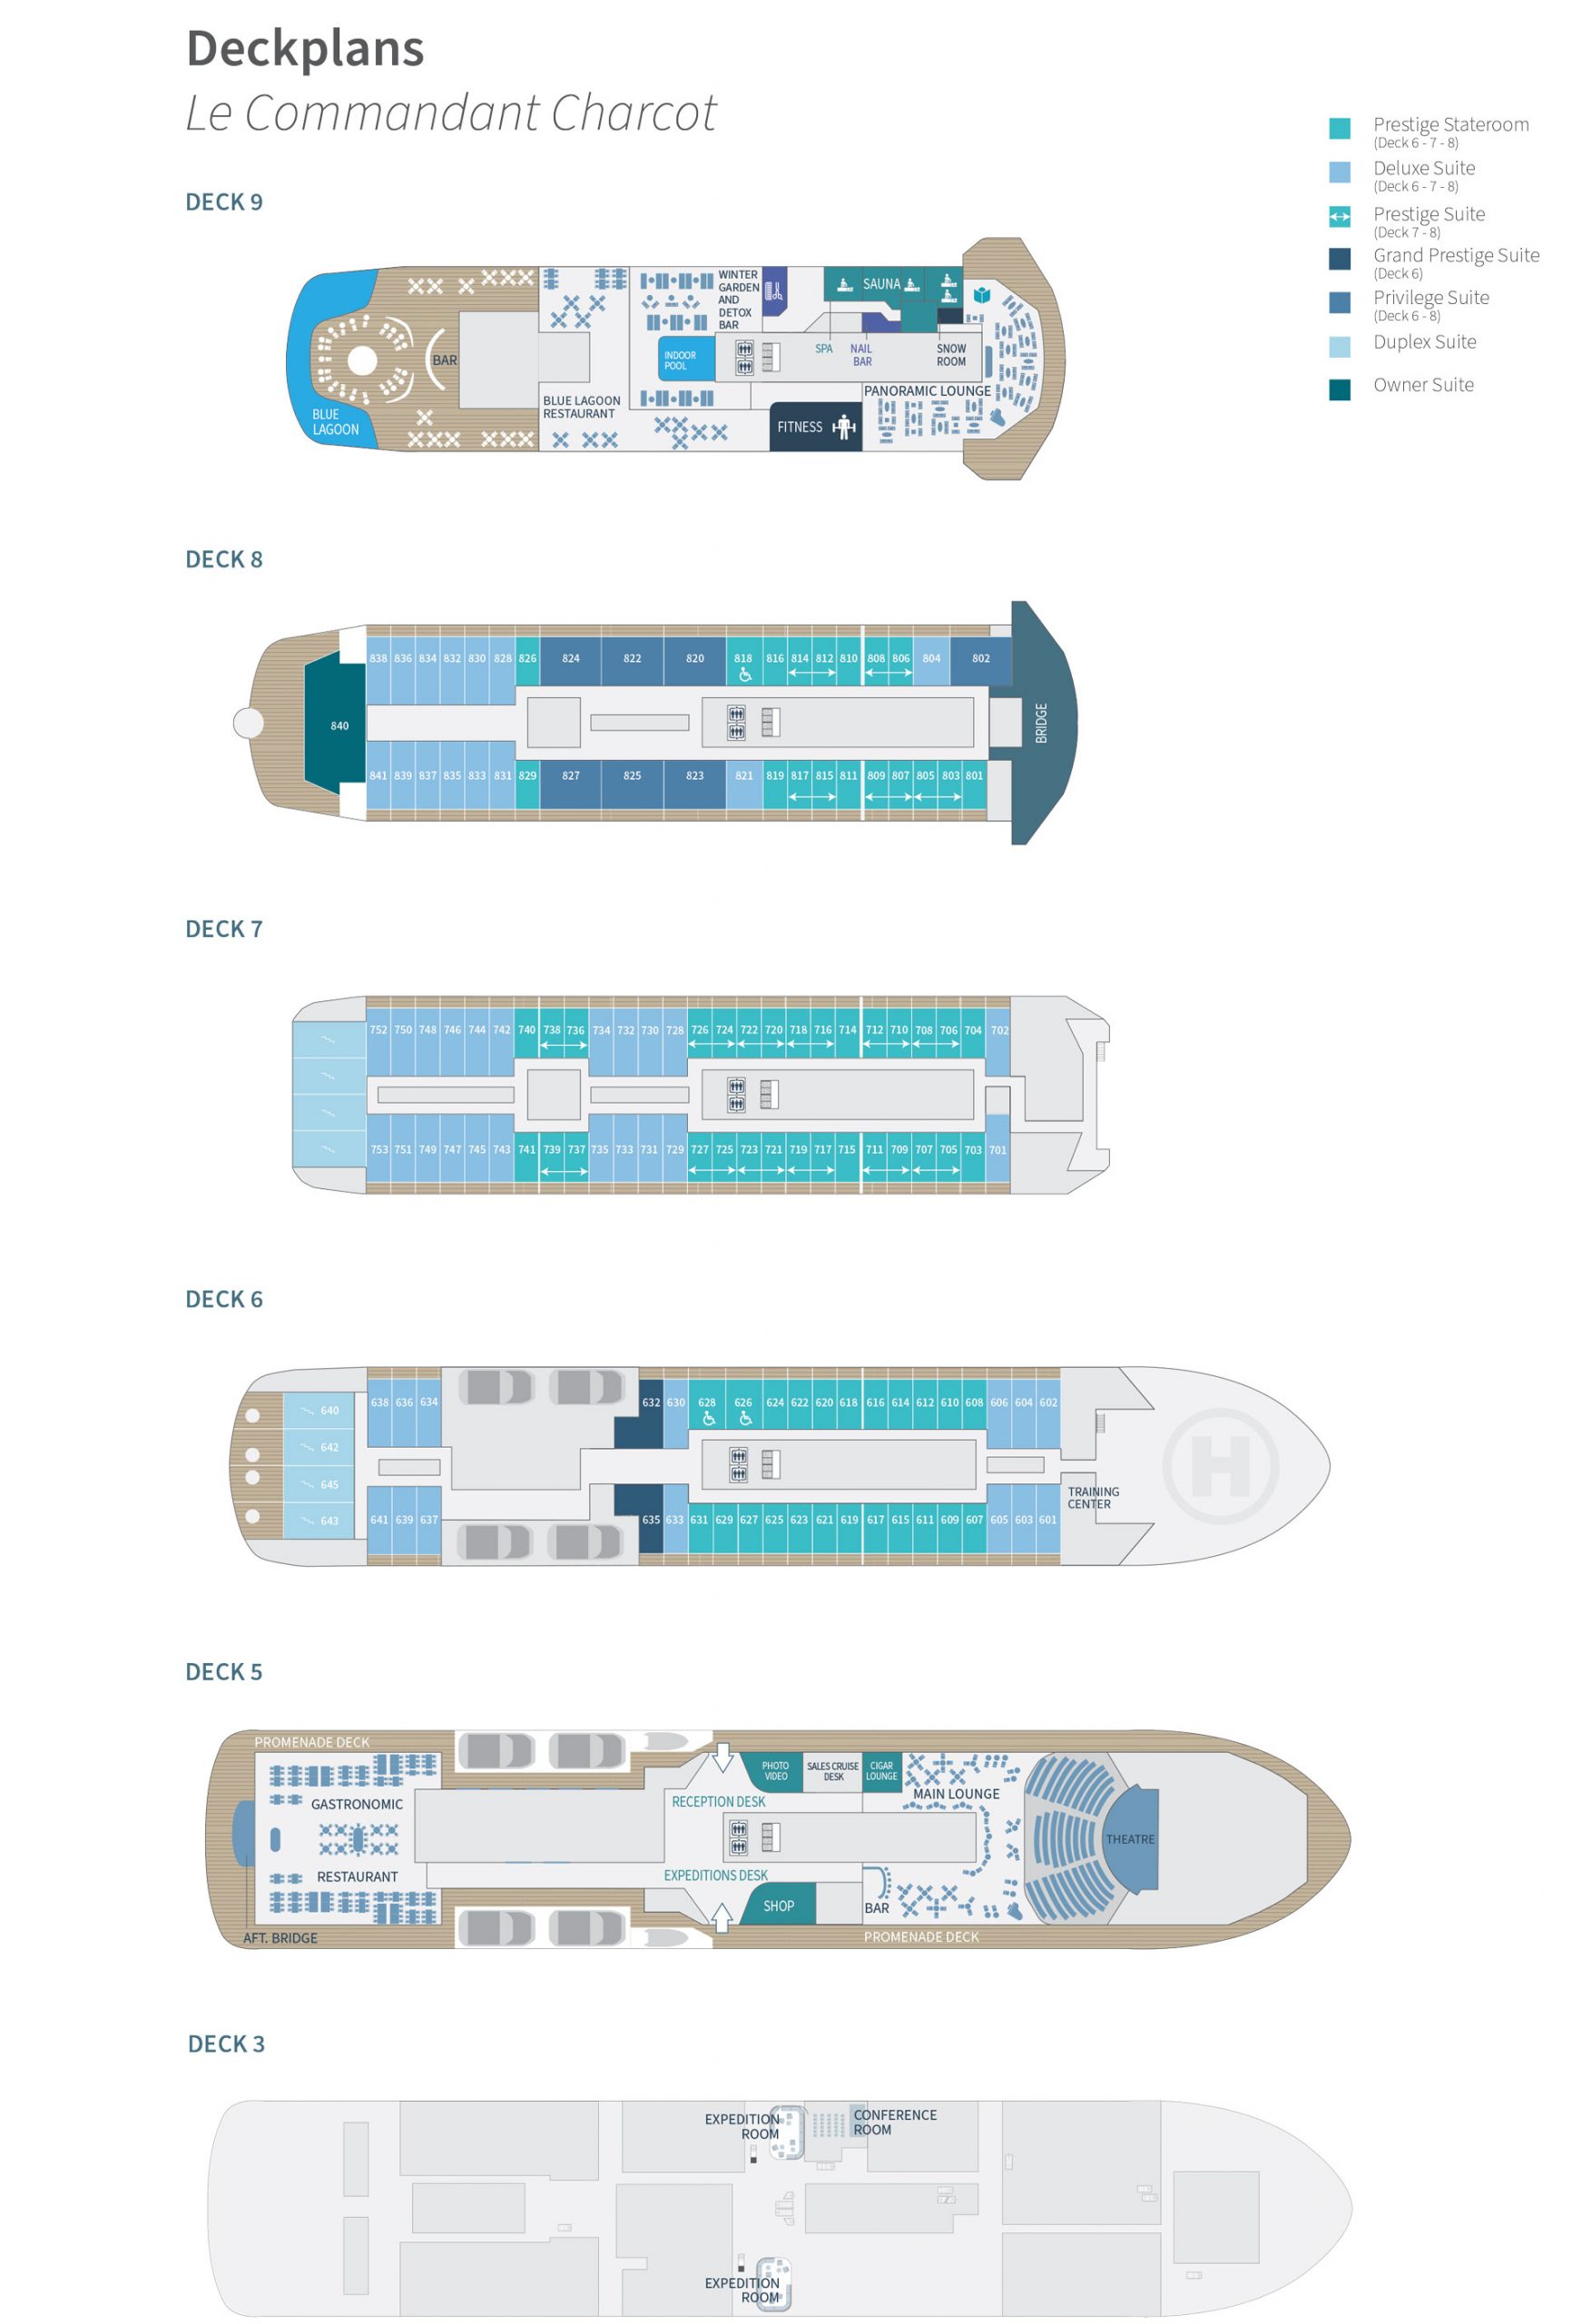 Deck plan of Ponant Commandant Charcot polar hybrid electric ship, showing cabin decks 3 & 5-9.